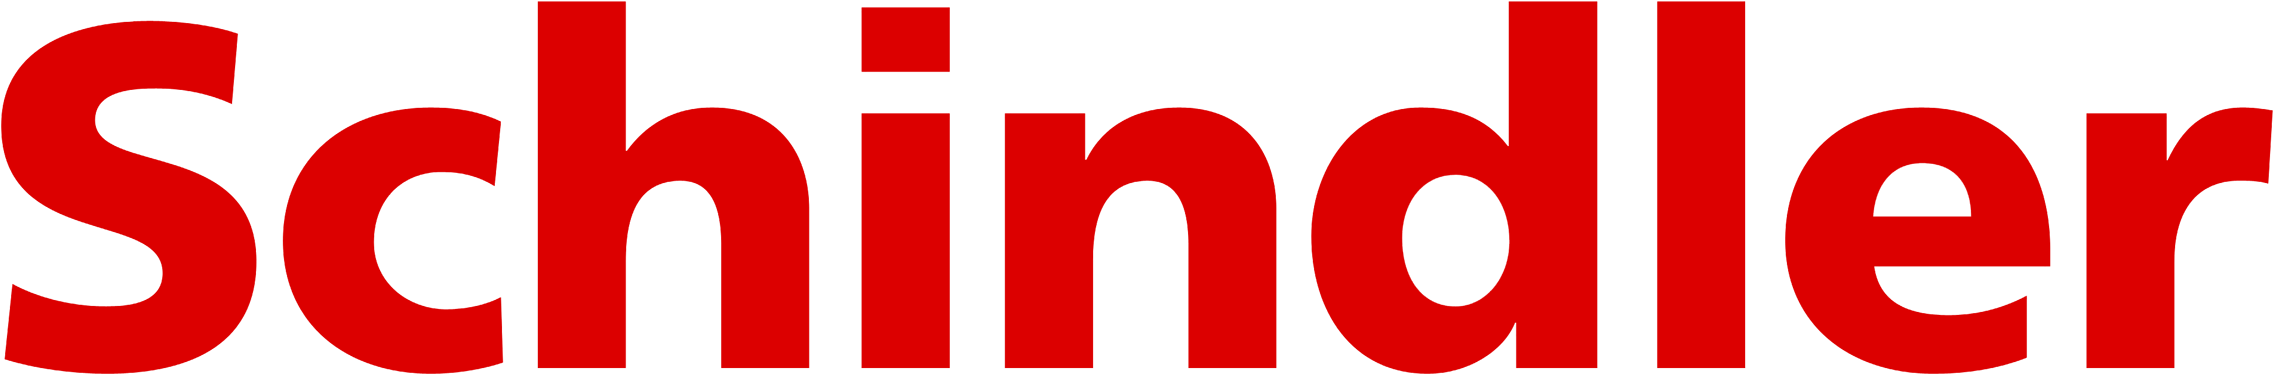 Schindler Holding Logo - Webbeds Logo Clipart (2272x1704), Png Download